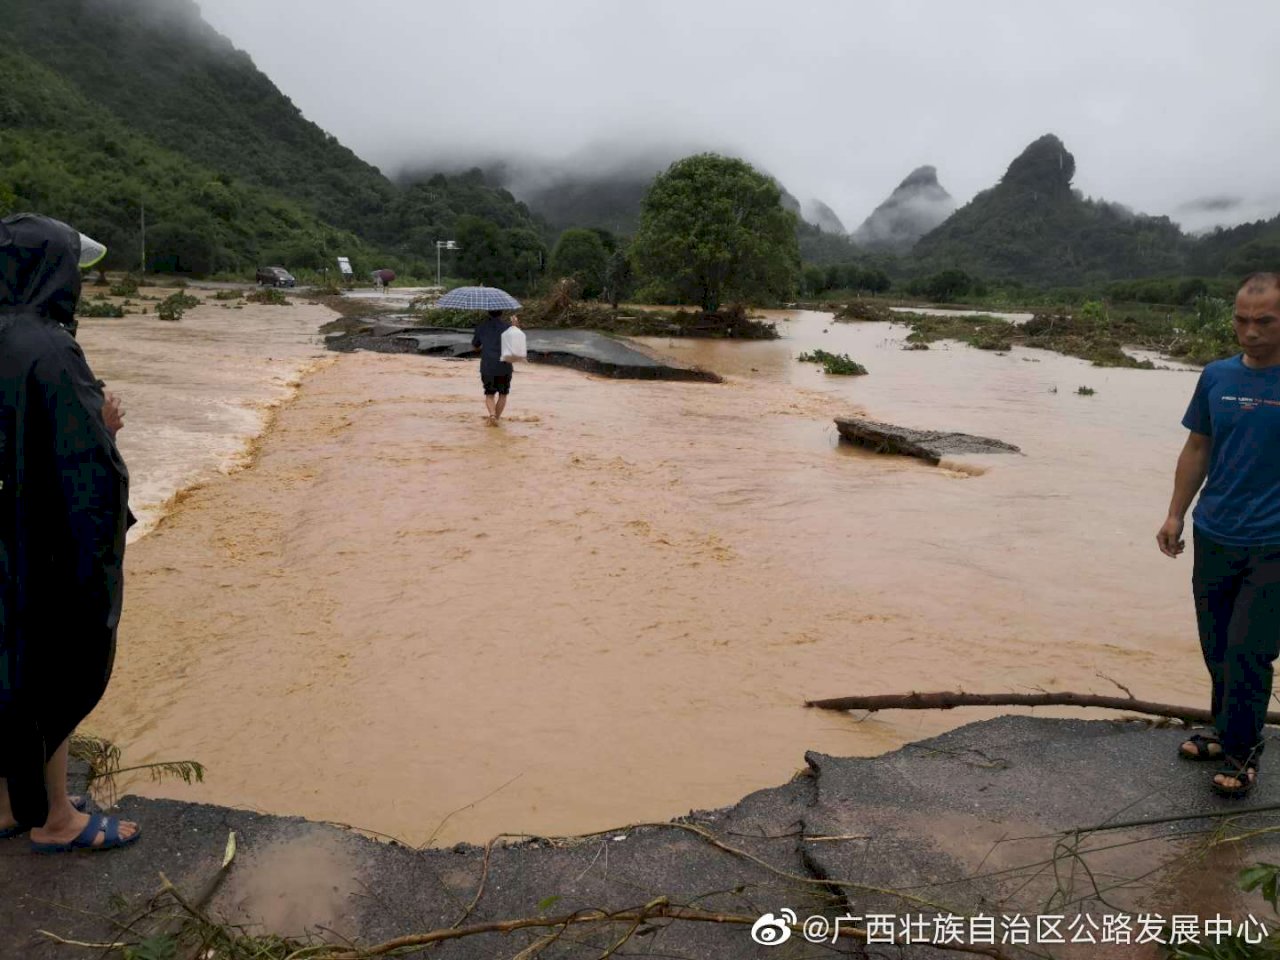 中國南方豪雨成災 官方啟動防汛響應赴廣西指導